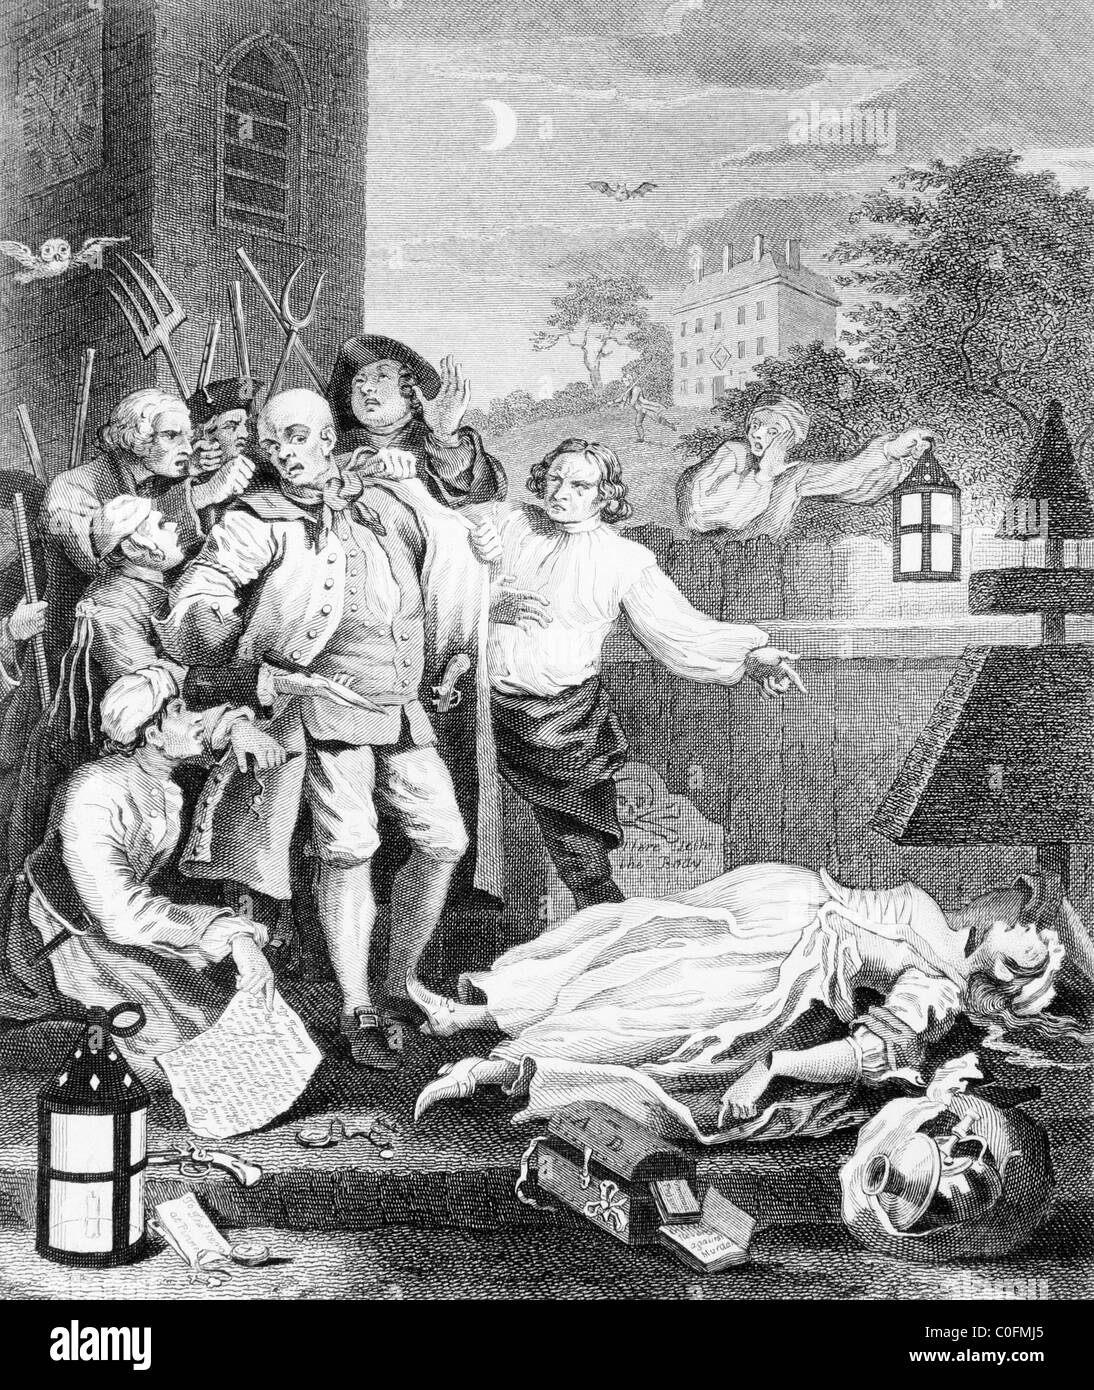 La cruauté dans 'Perfection', à partir de tôles III Les quatre étapes de la cruauté sur la base d'une gravure originale de William Hogarth Banque D'Images